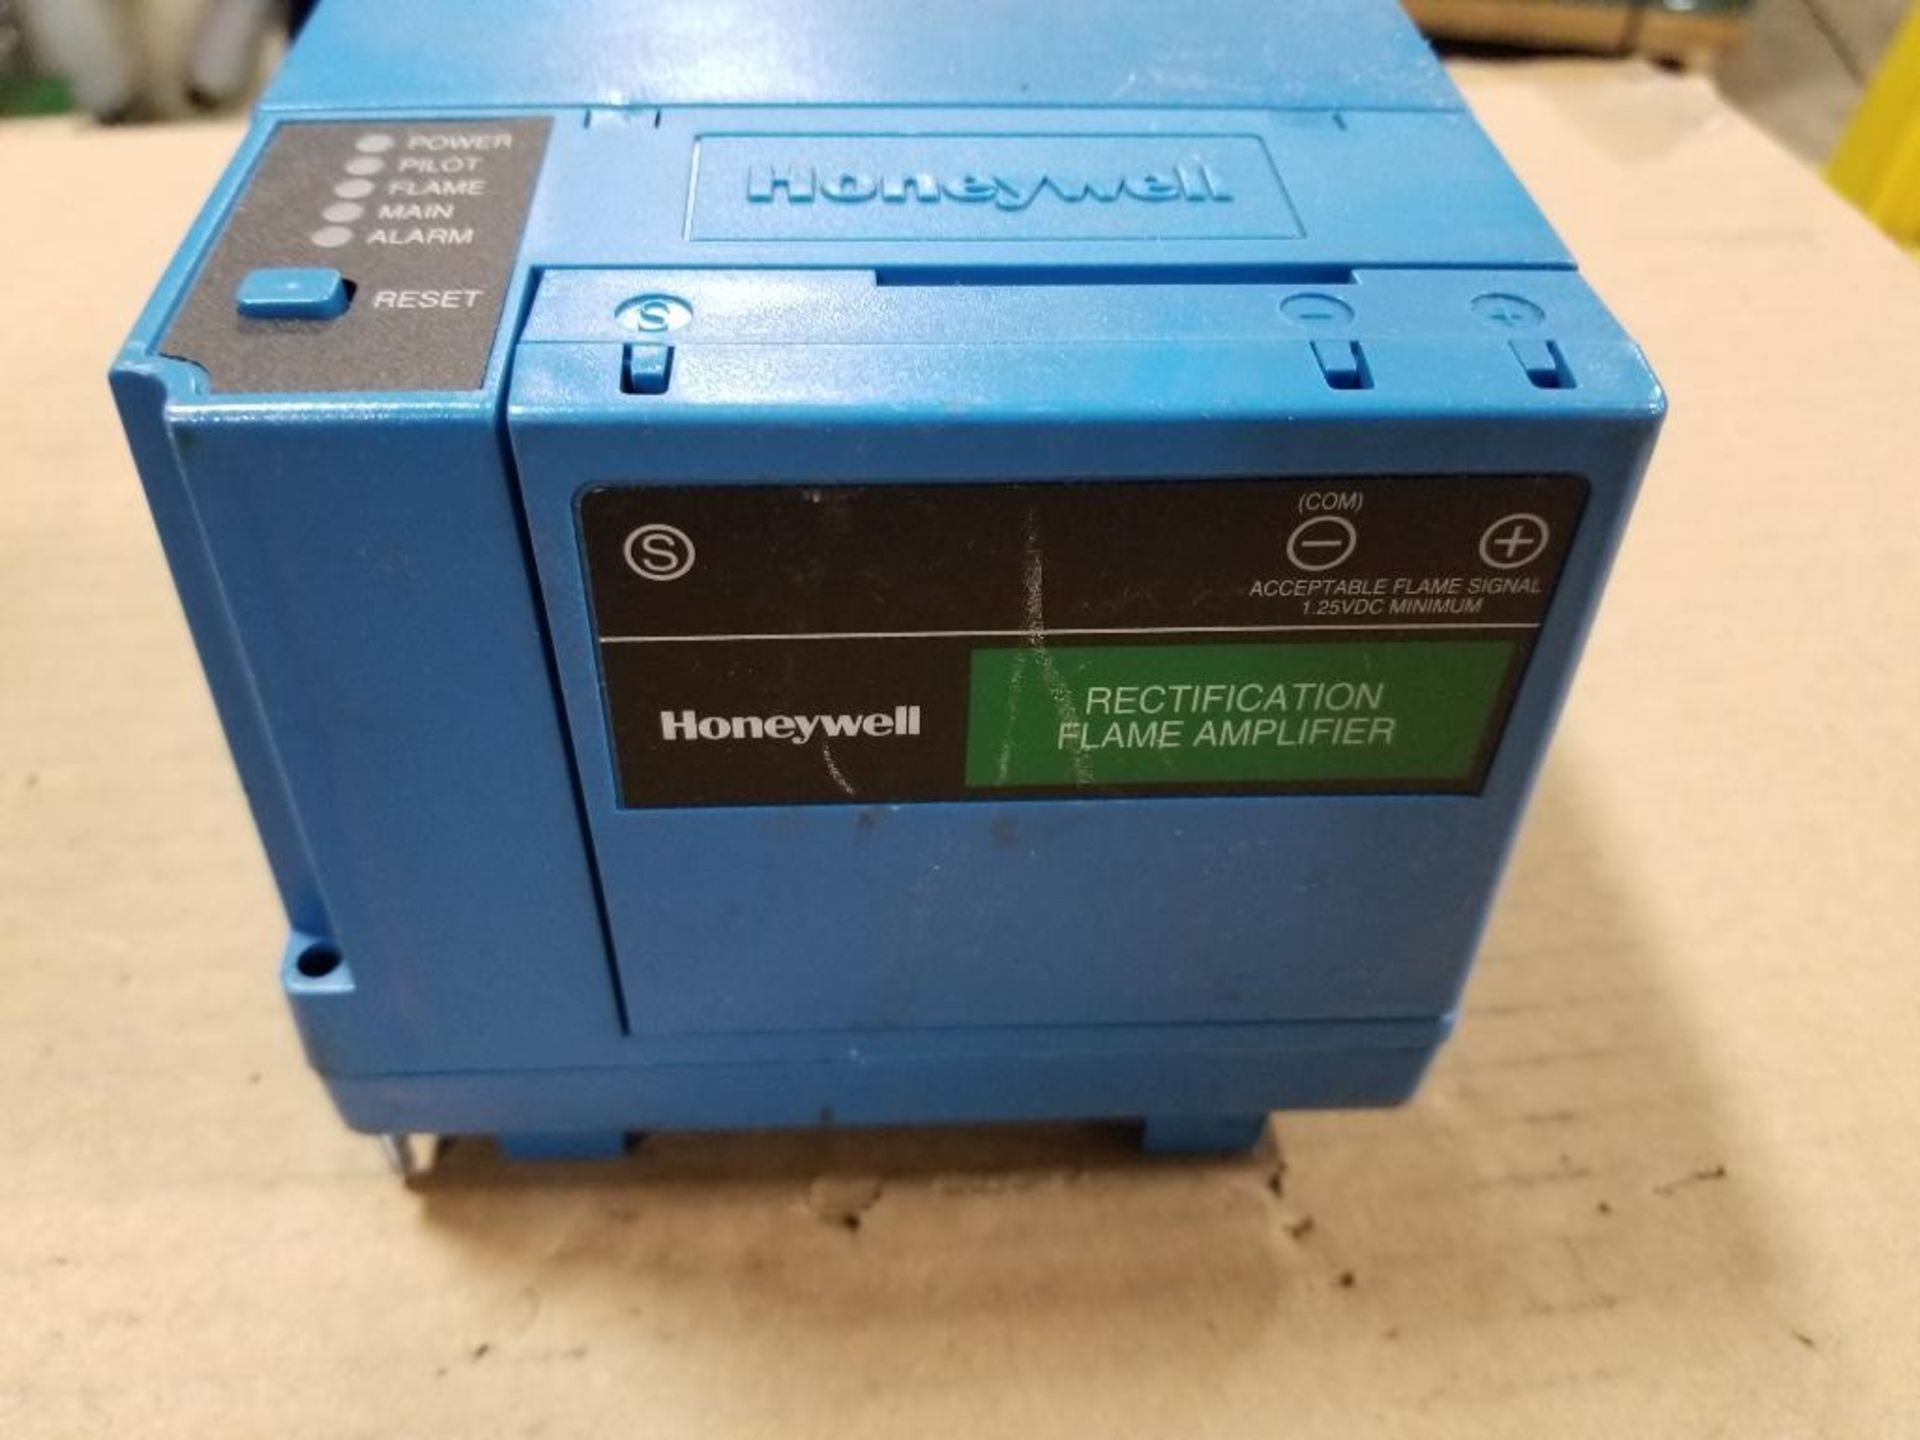 Qty 2 - Honeywell RM7890-B-1030 burner control unit. - Image 3 of 7